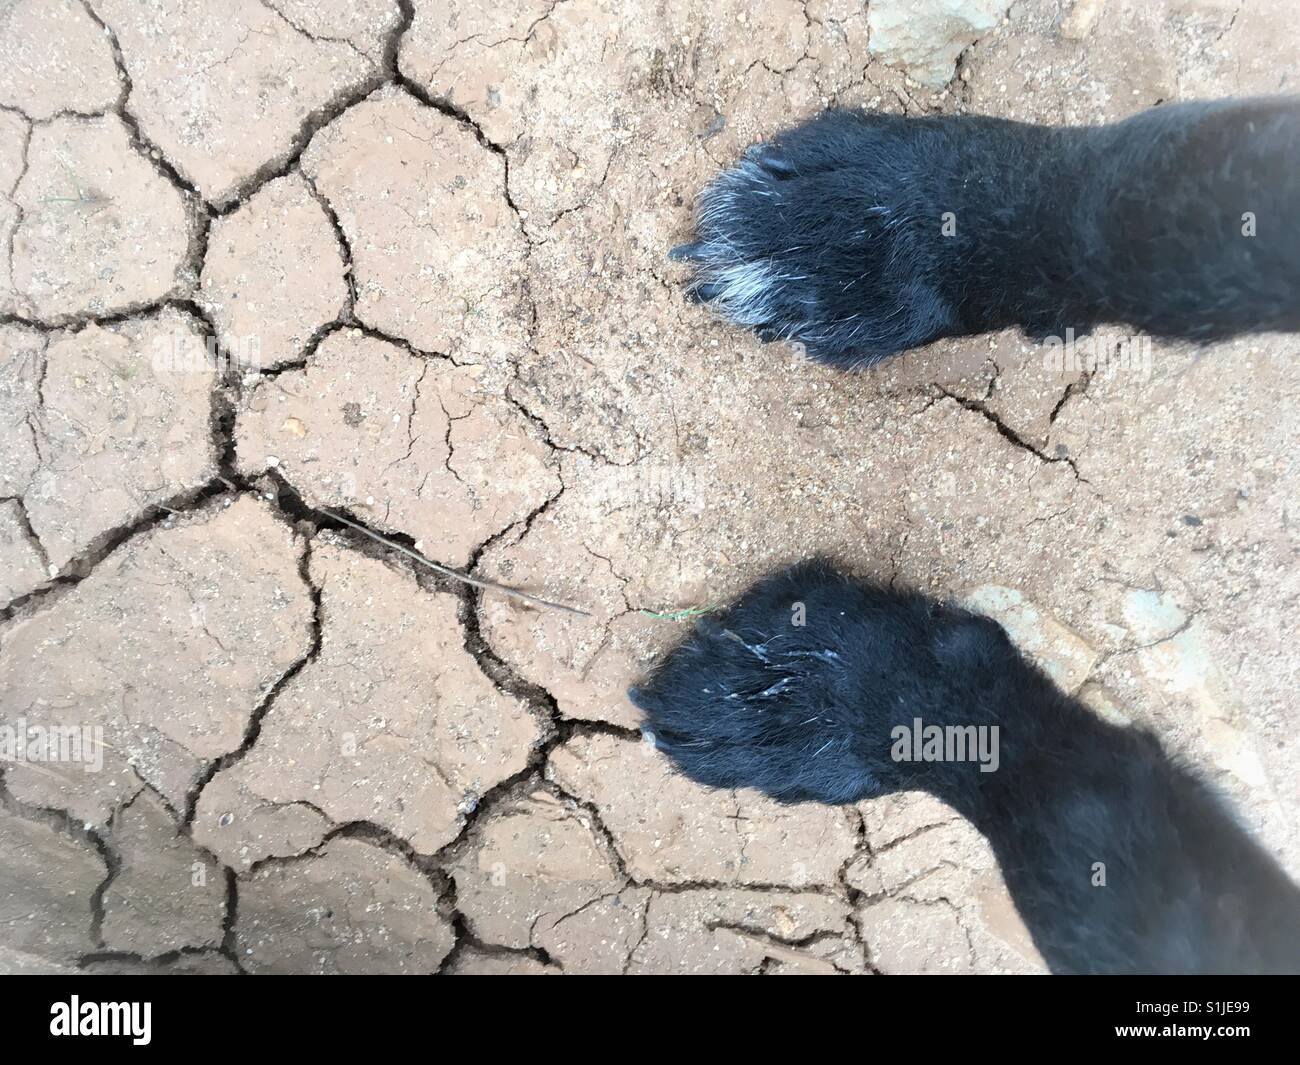 Eine portugiesische Perdigueiro/Labrador Mix Rasse steht Hund auf der trockenen Erde, Abano, Cascais, Portugal. Stockfoto